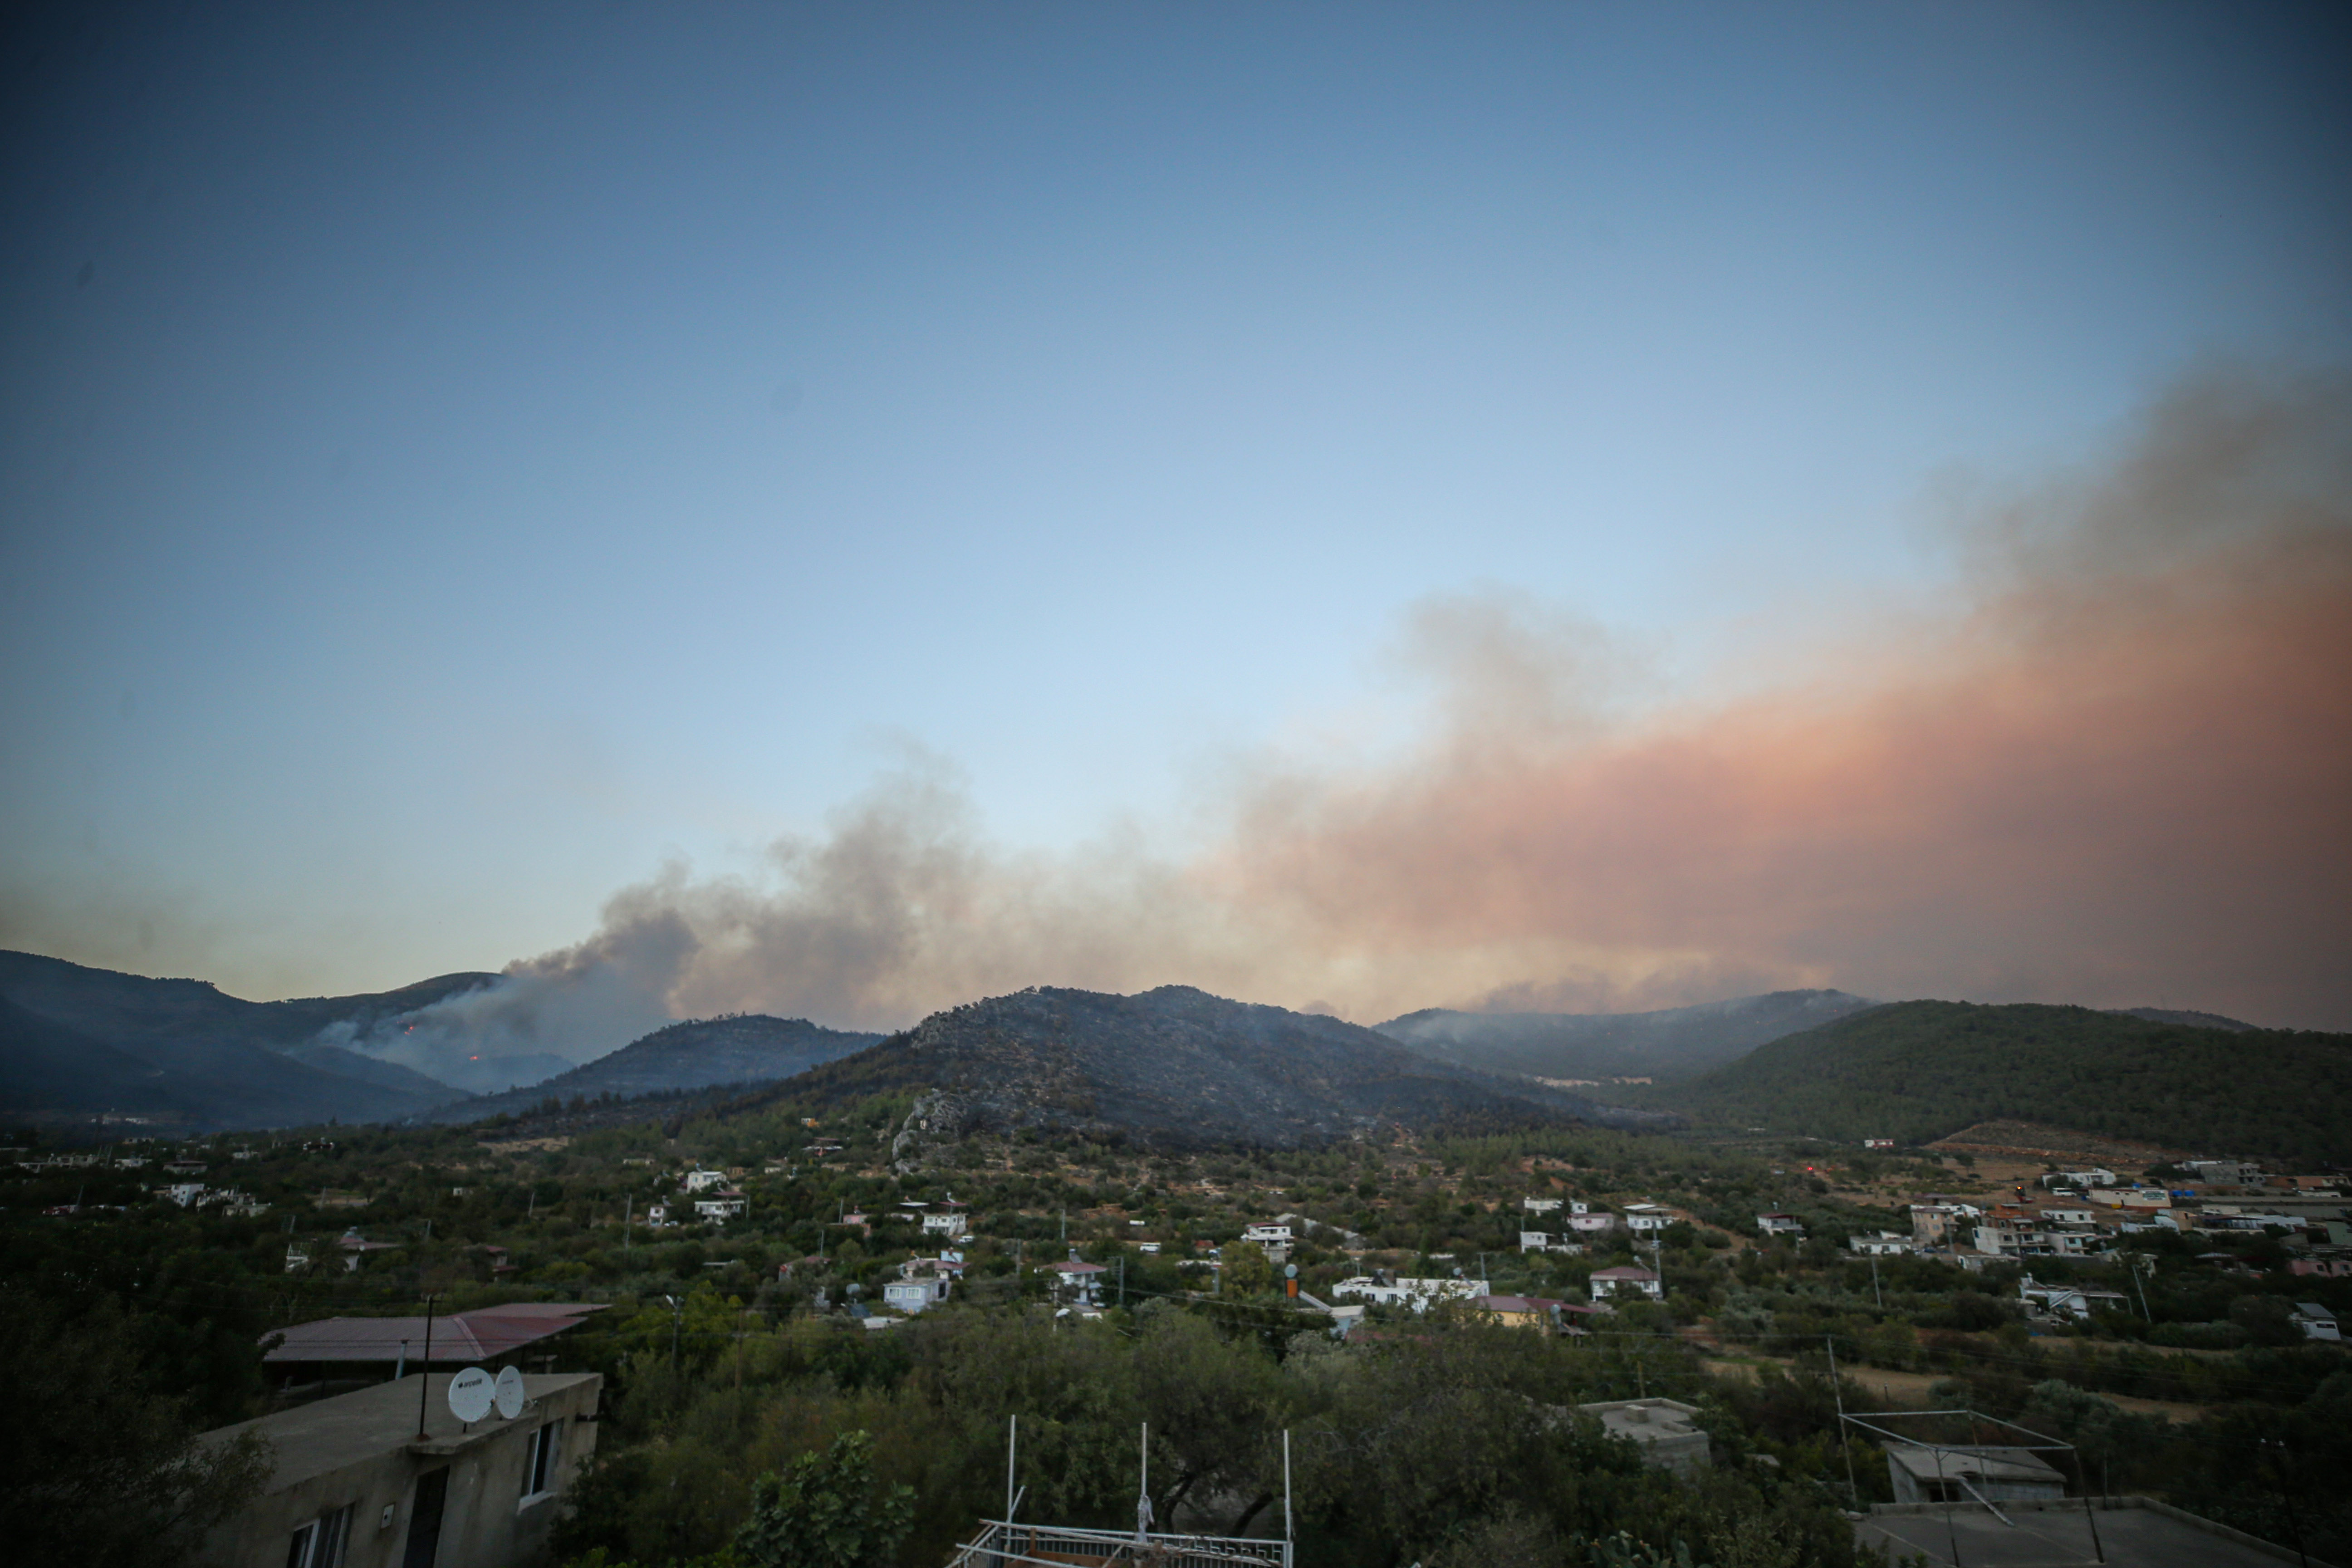 Gülnar'da orman yangını büyüyor: 110 ev boşaltıldı